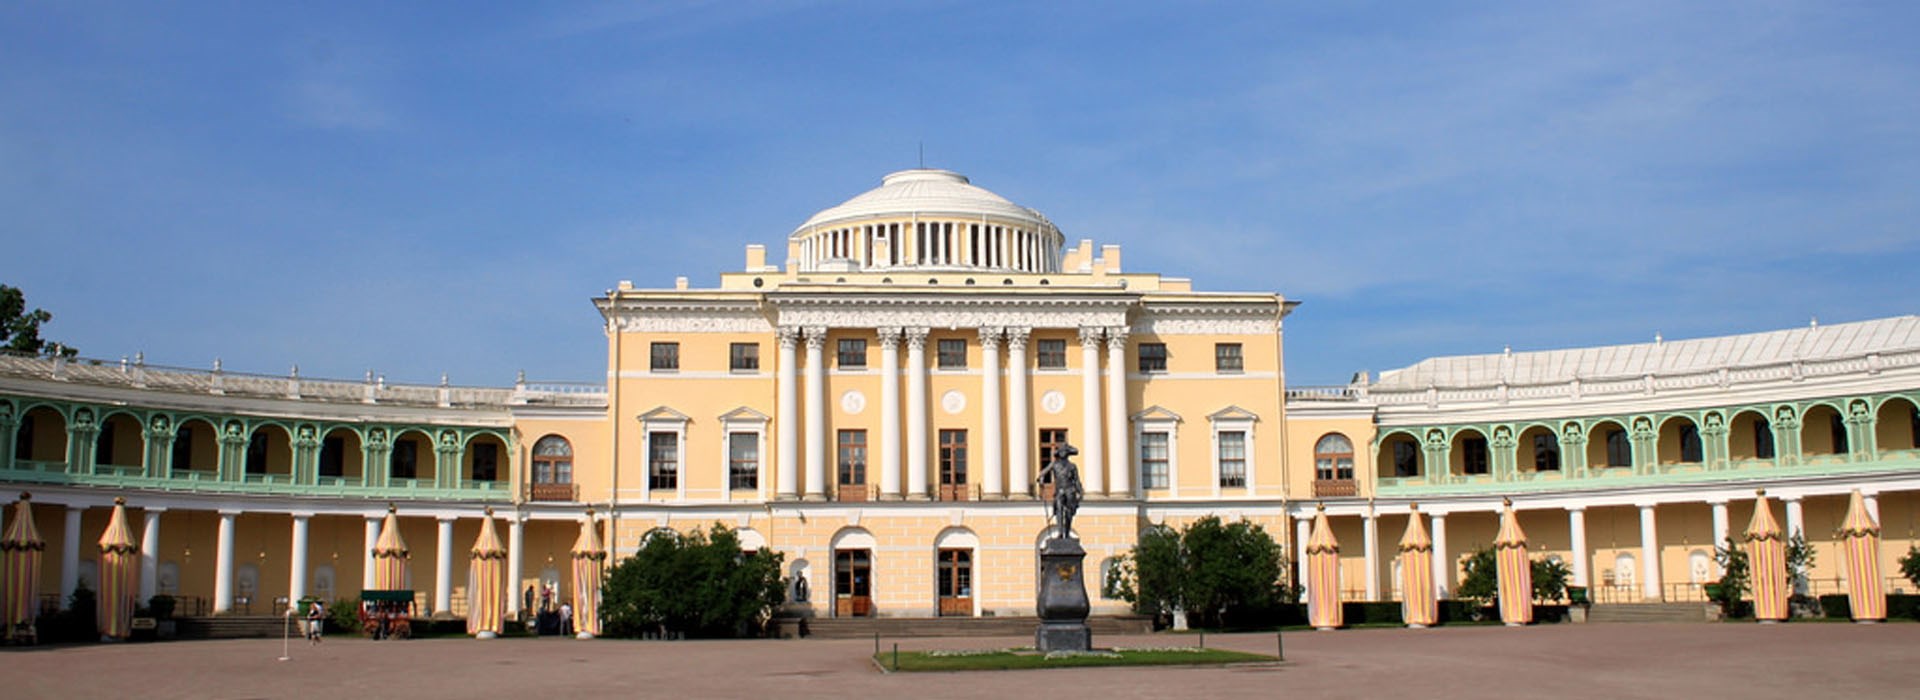 Visiter Le Palais de Pavlovsk - Russie